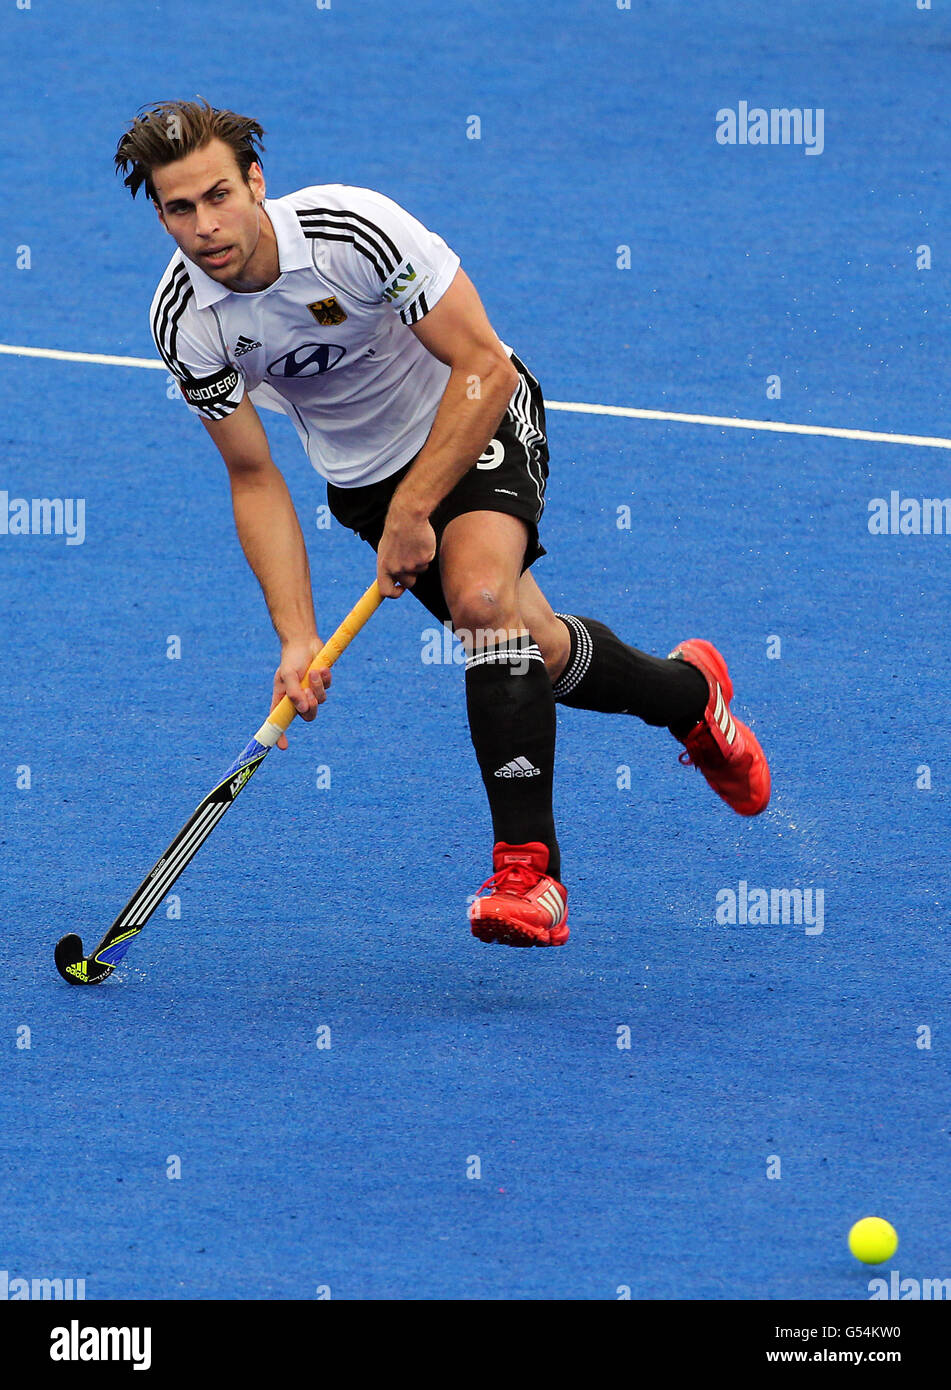 Deutschlands Christopher Zeller im Einsatz gegen Australien während des Visa International Invitational Hockey Tournament in der Riverbank Arena, London. Stockfoto